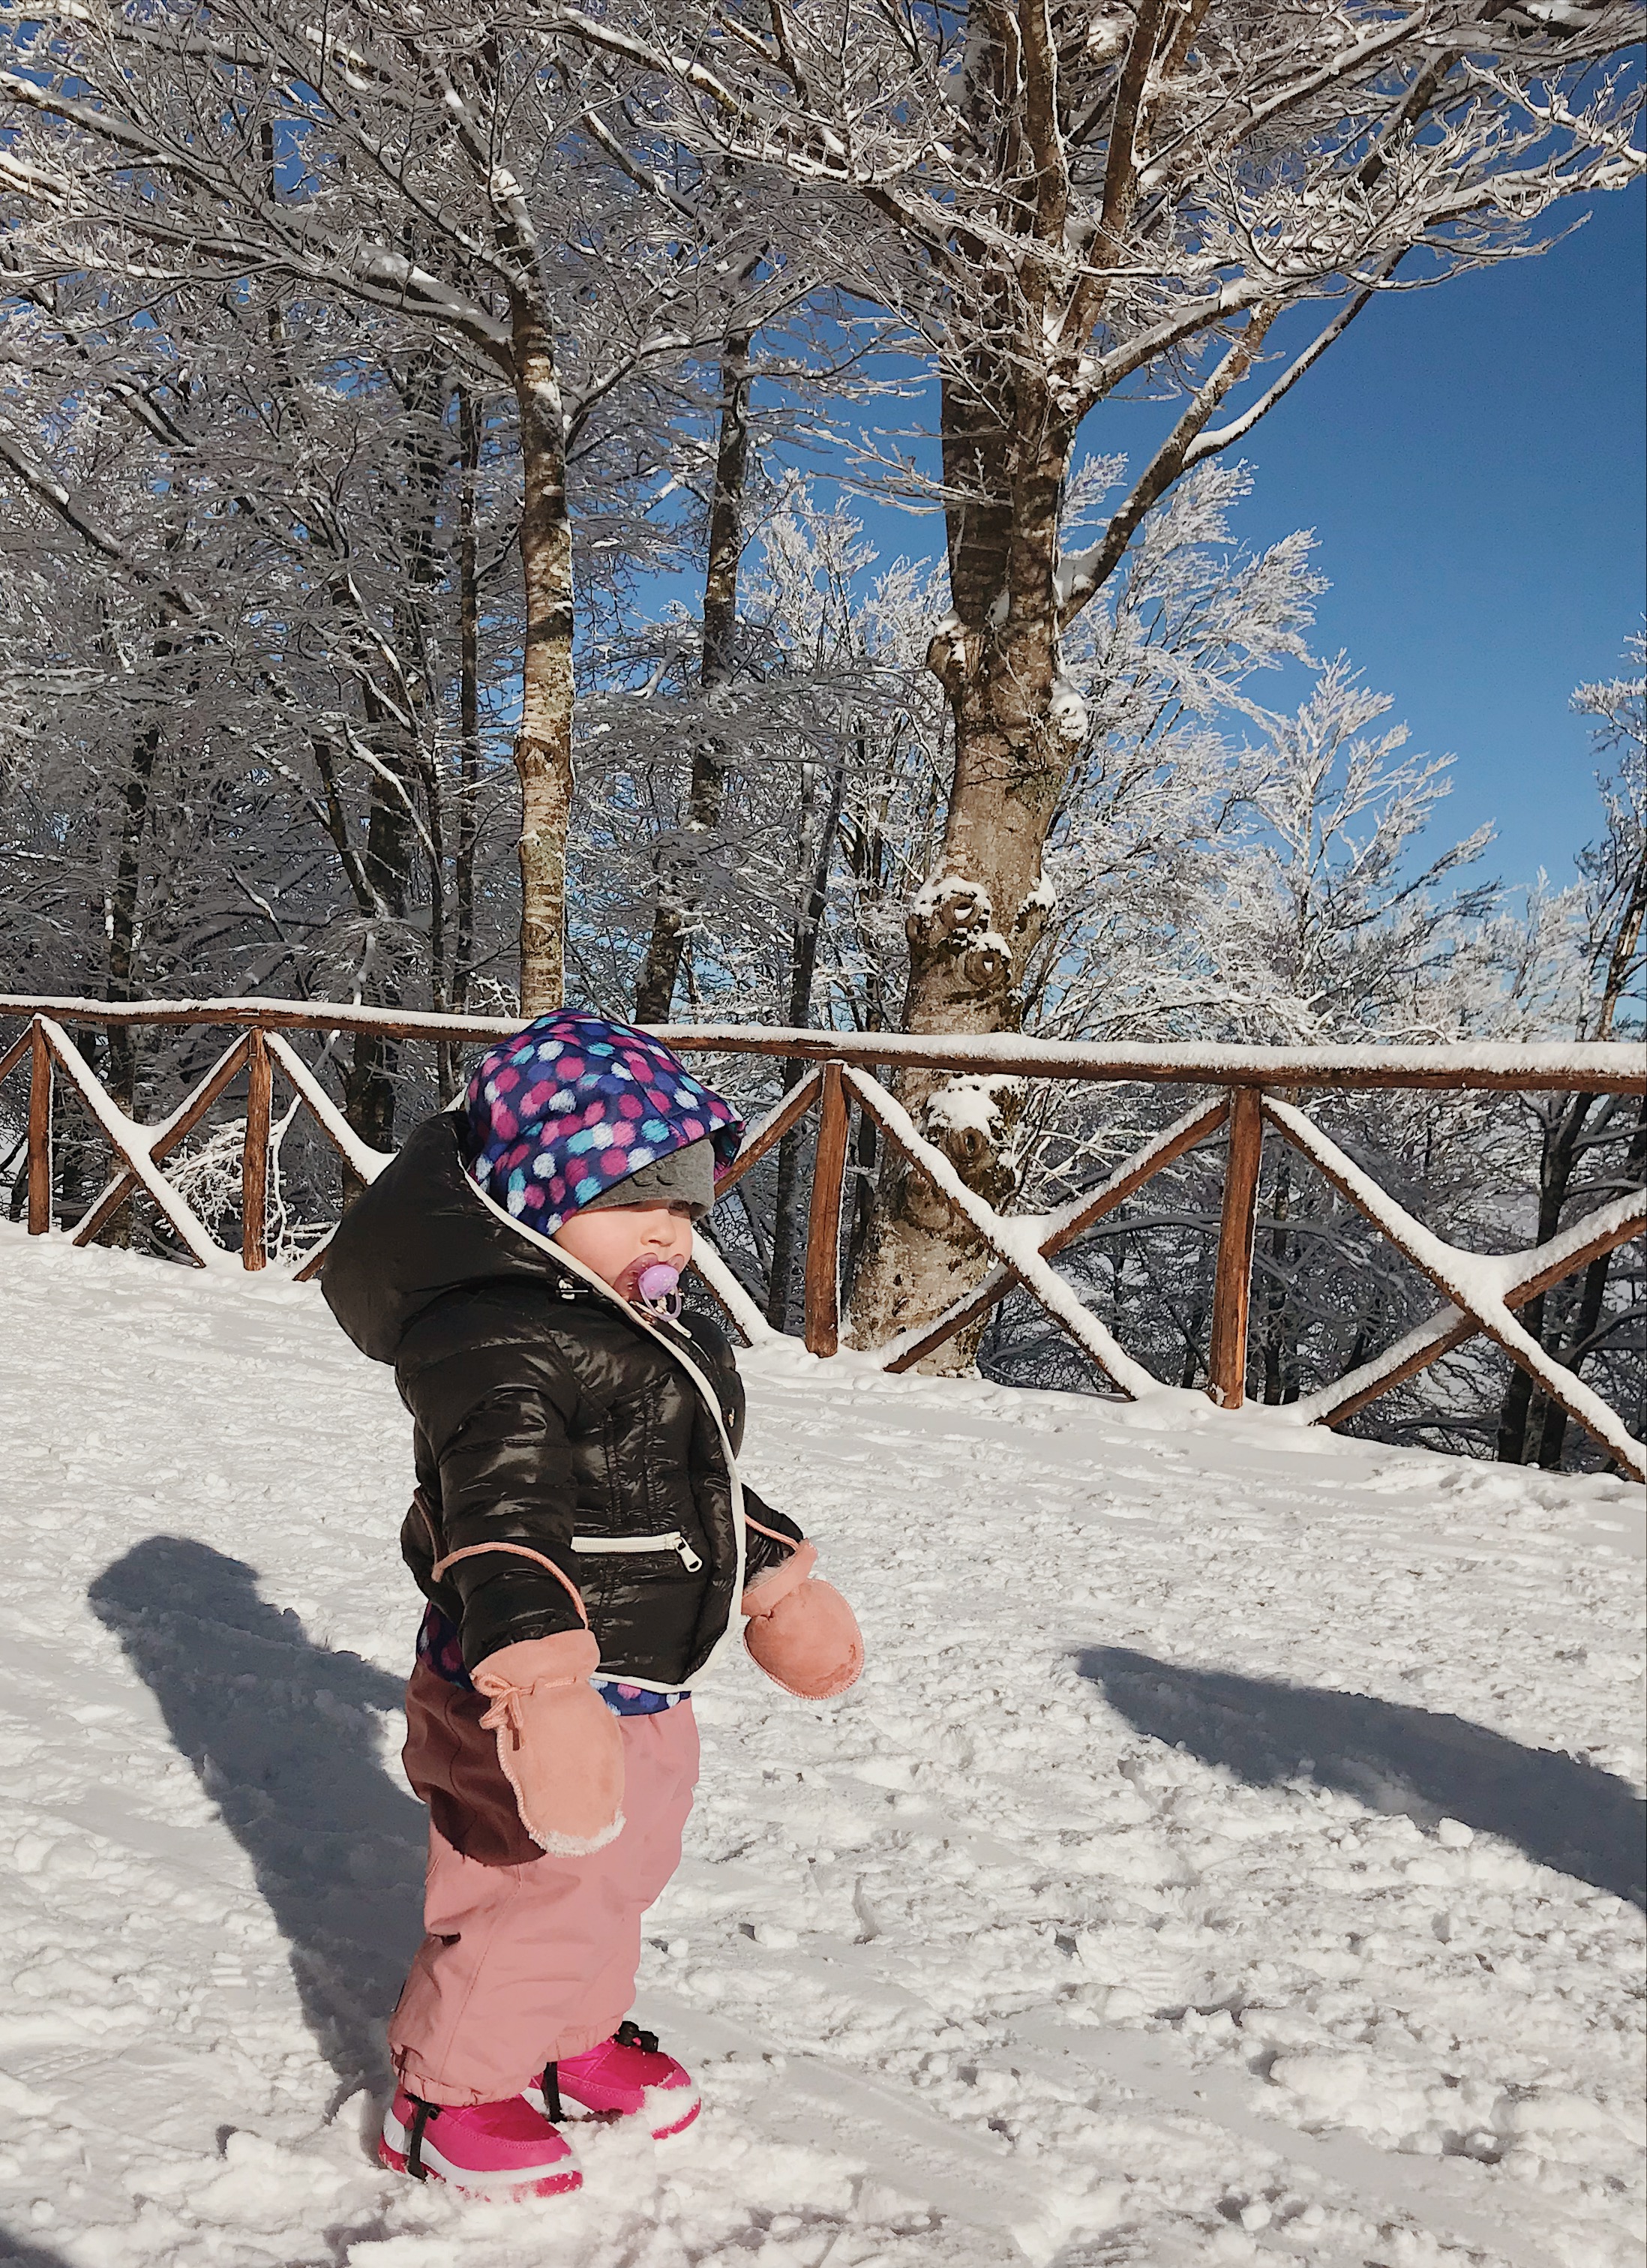 VANCAMP Tuta da Neve per Donna Uomo Bambini Bambino Unisex Invernale Impermeabile Sci con Cappuccio 